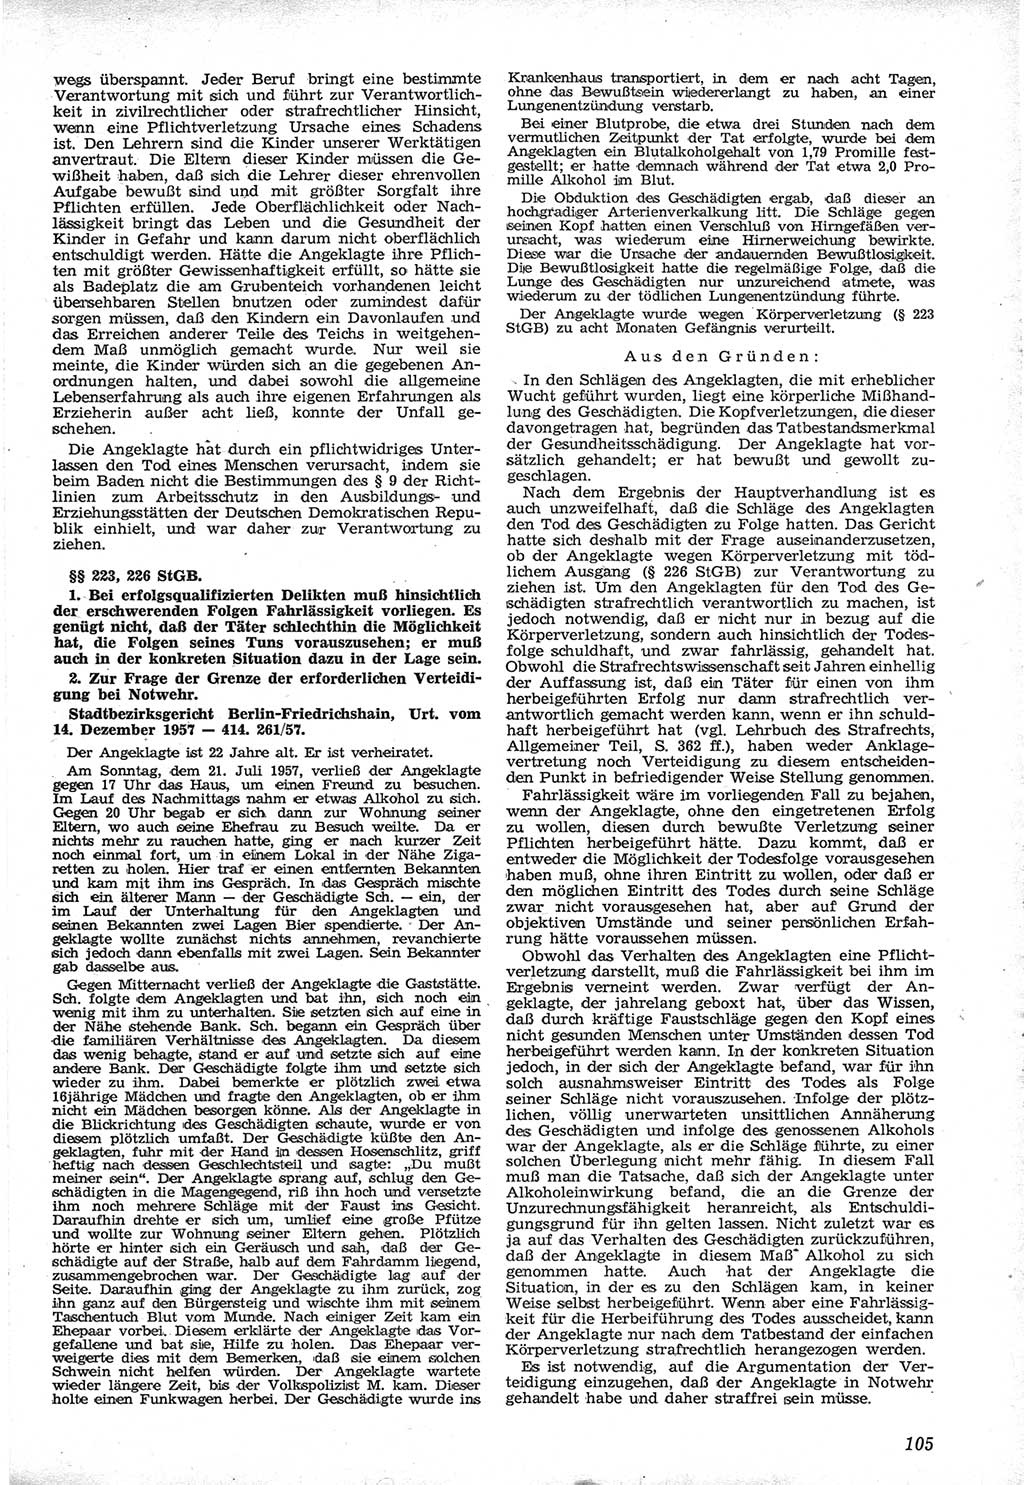 Neue Justiz (NJ), Zeitschrift für Recht und Rechtswissenschaft [Deutsche Demokratische Republik (DDR)], 12. Jahrgang 1958, Seite 105 (NJ DDR 1958, S. 105)